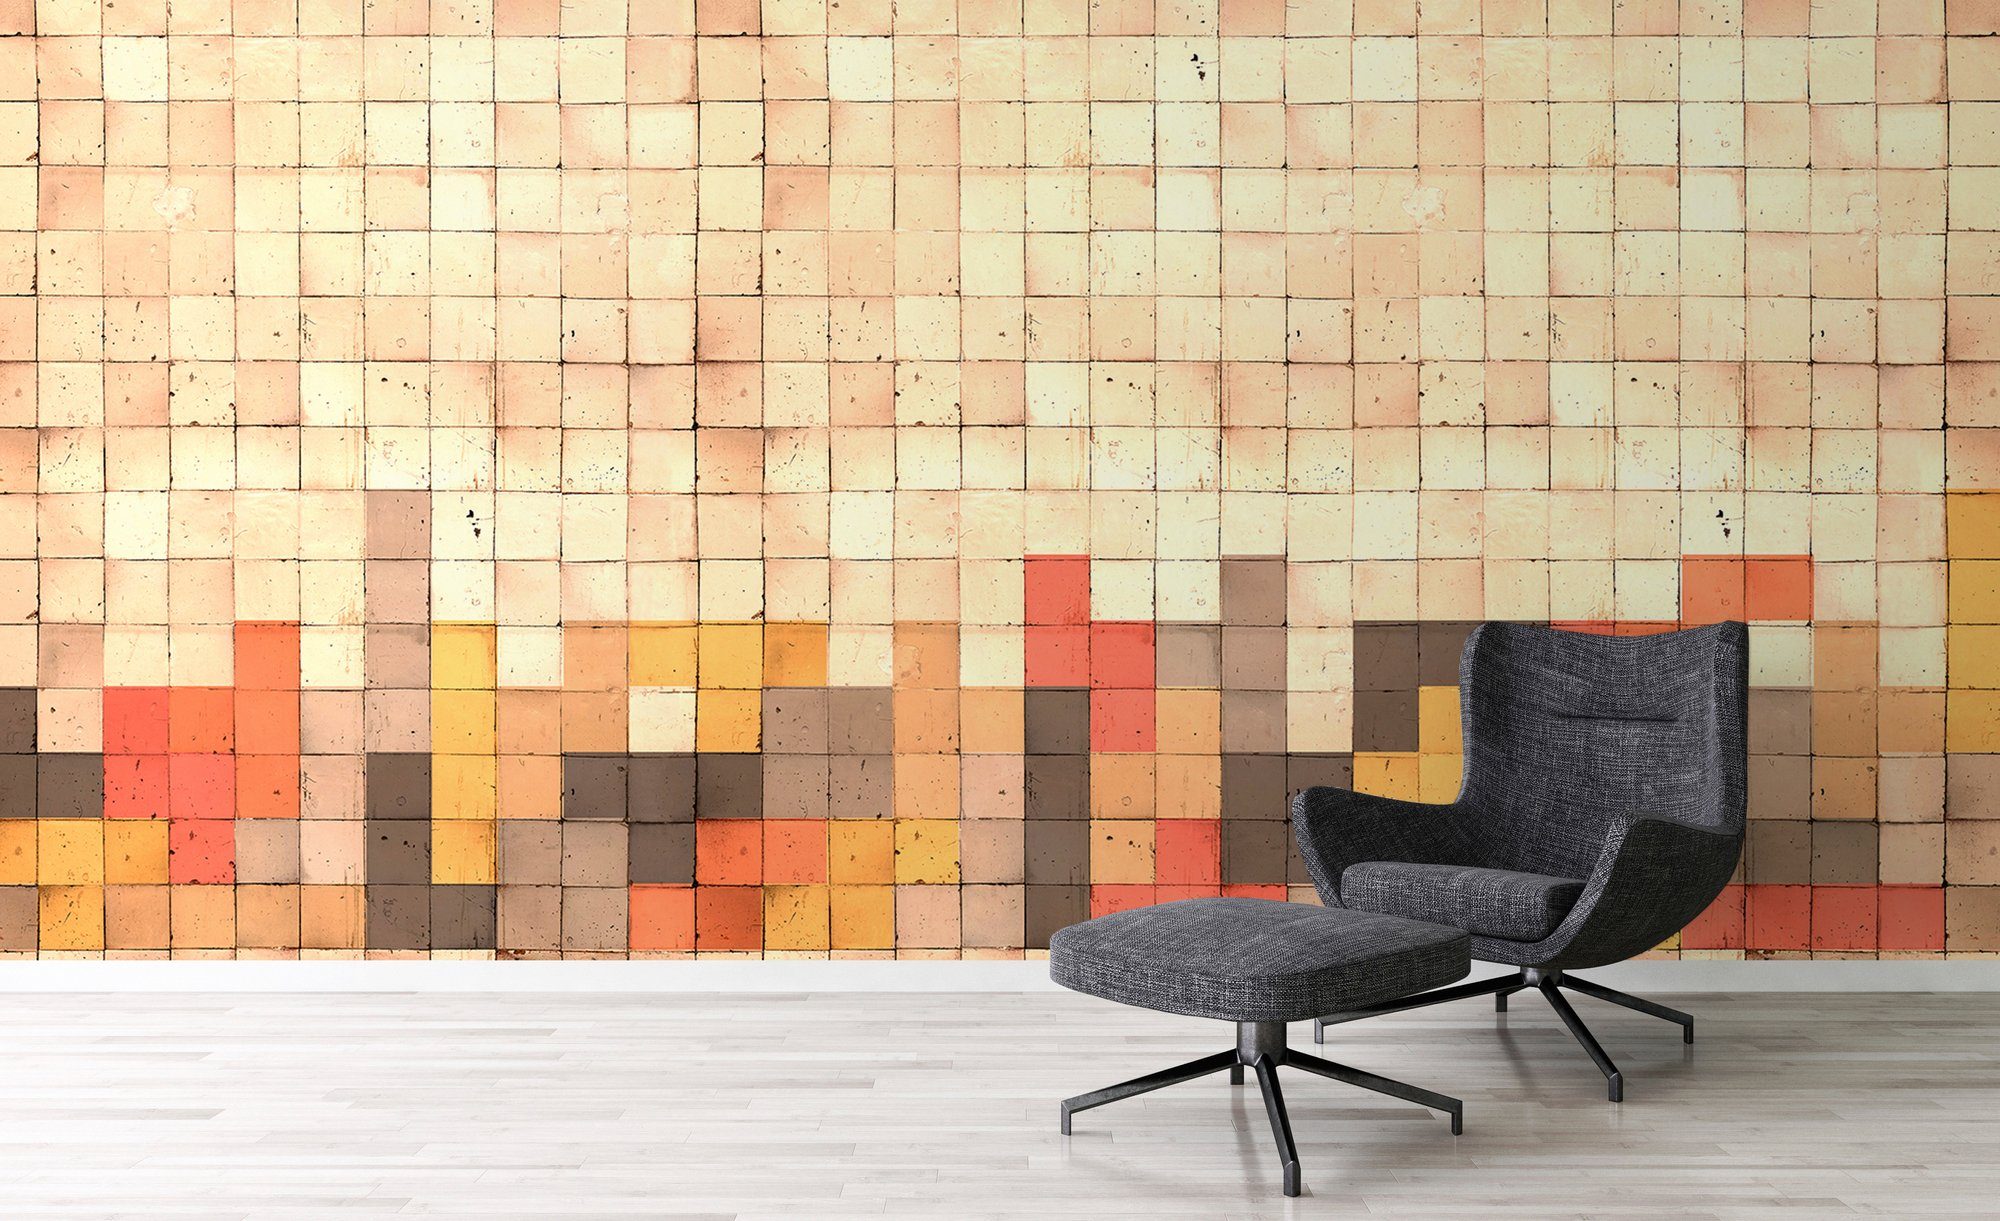 St), Tetris Schräge, Architects 2, Wand, Vlies, 47 glatt, Atelier Paper Mosaic geometrisch, Fototapete (6 Decke rot/ocker/beige